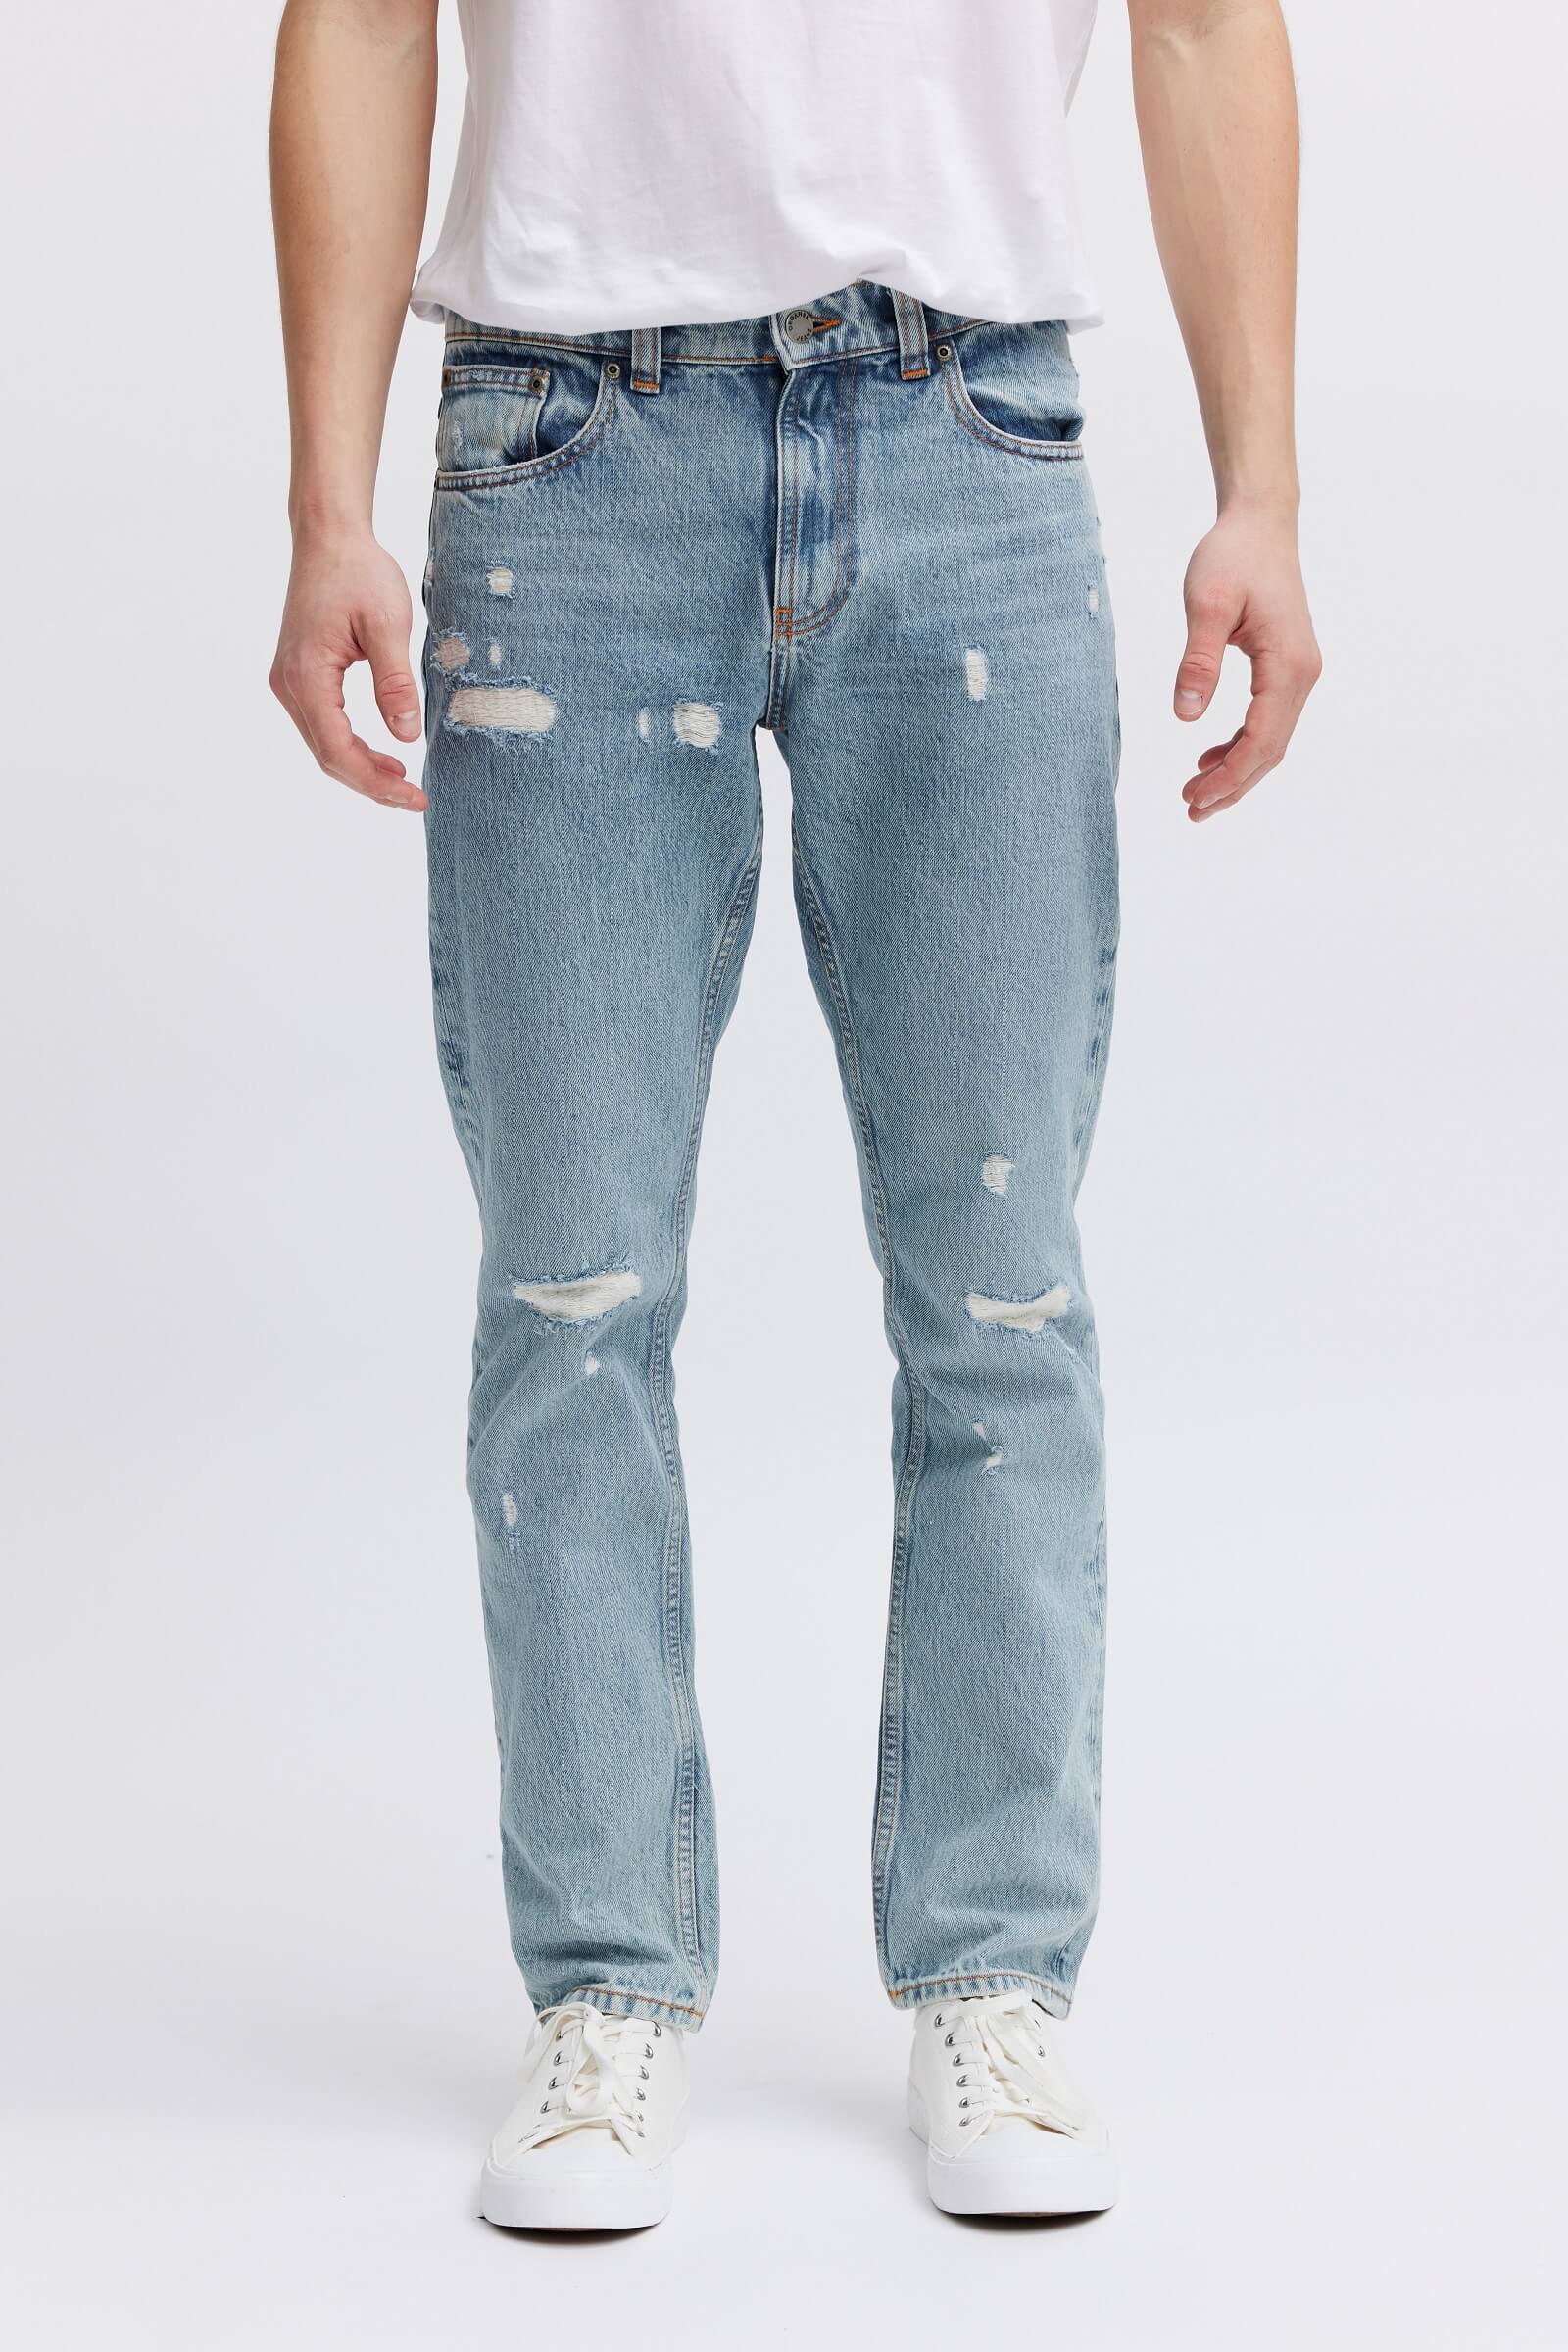 Best Jeans for Men | Straight Leg + Slim Fit + Regular | Organic Denim ...